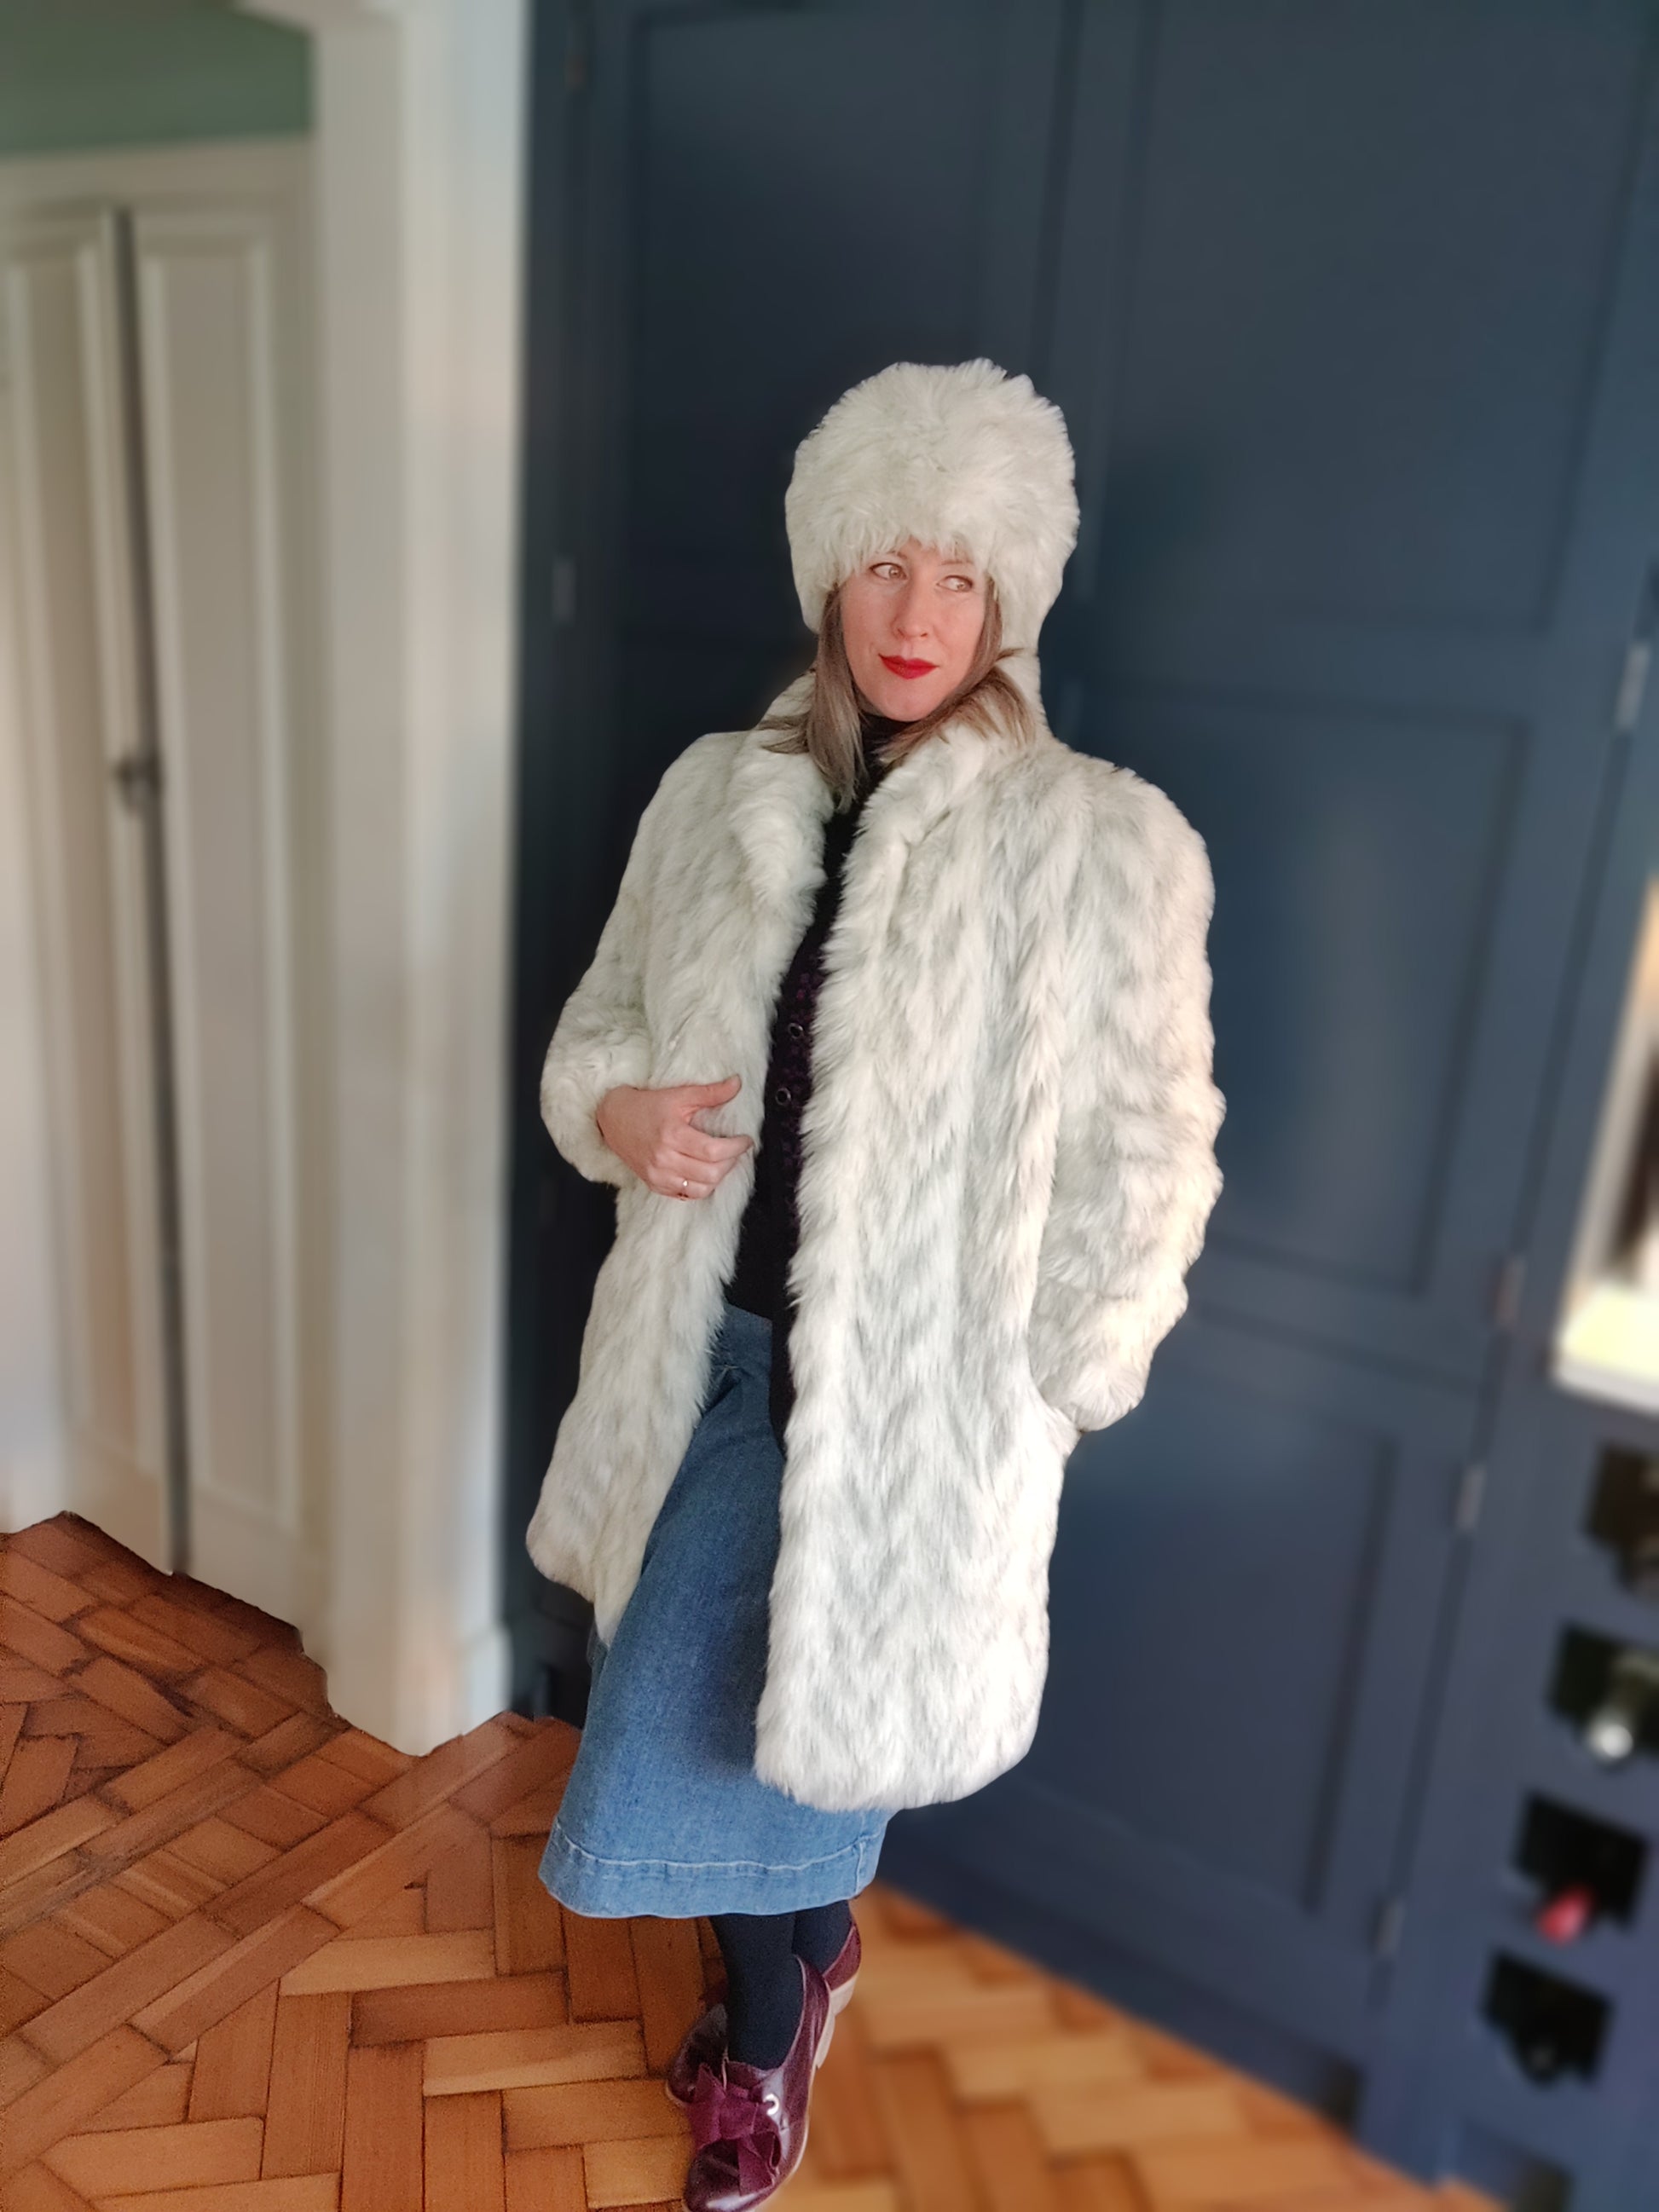 Amazing fur hat and coat